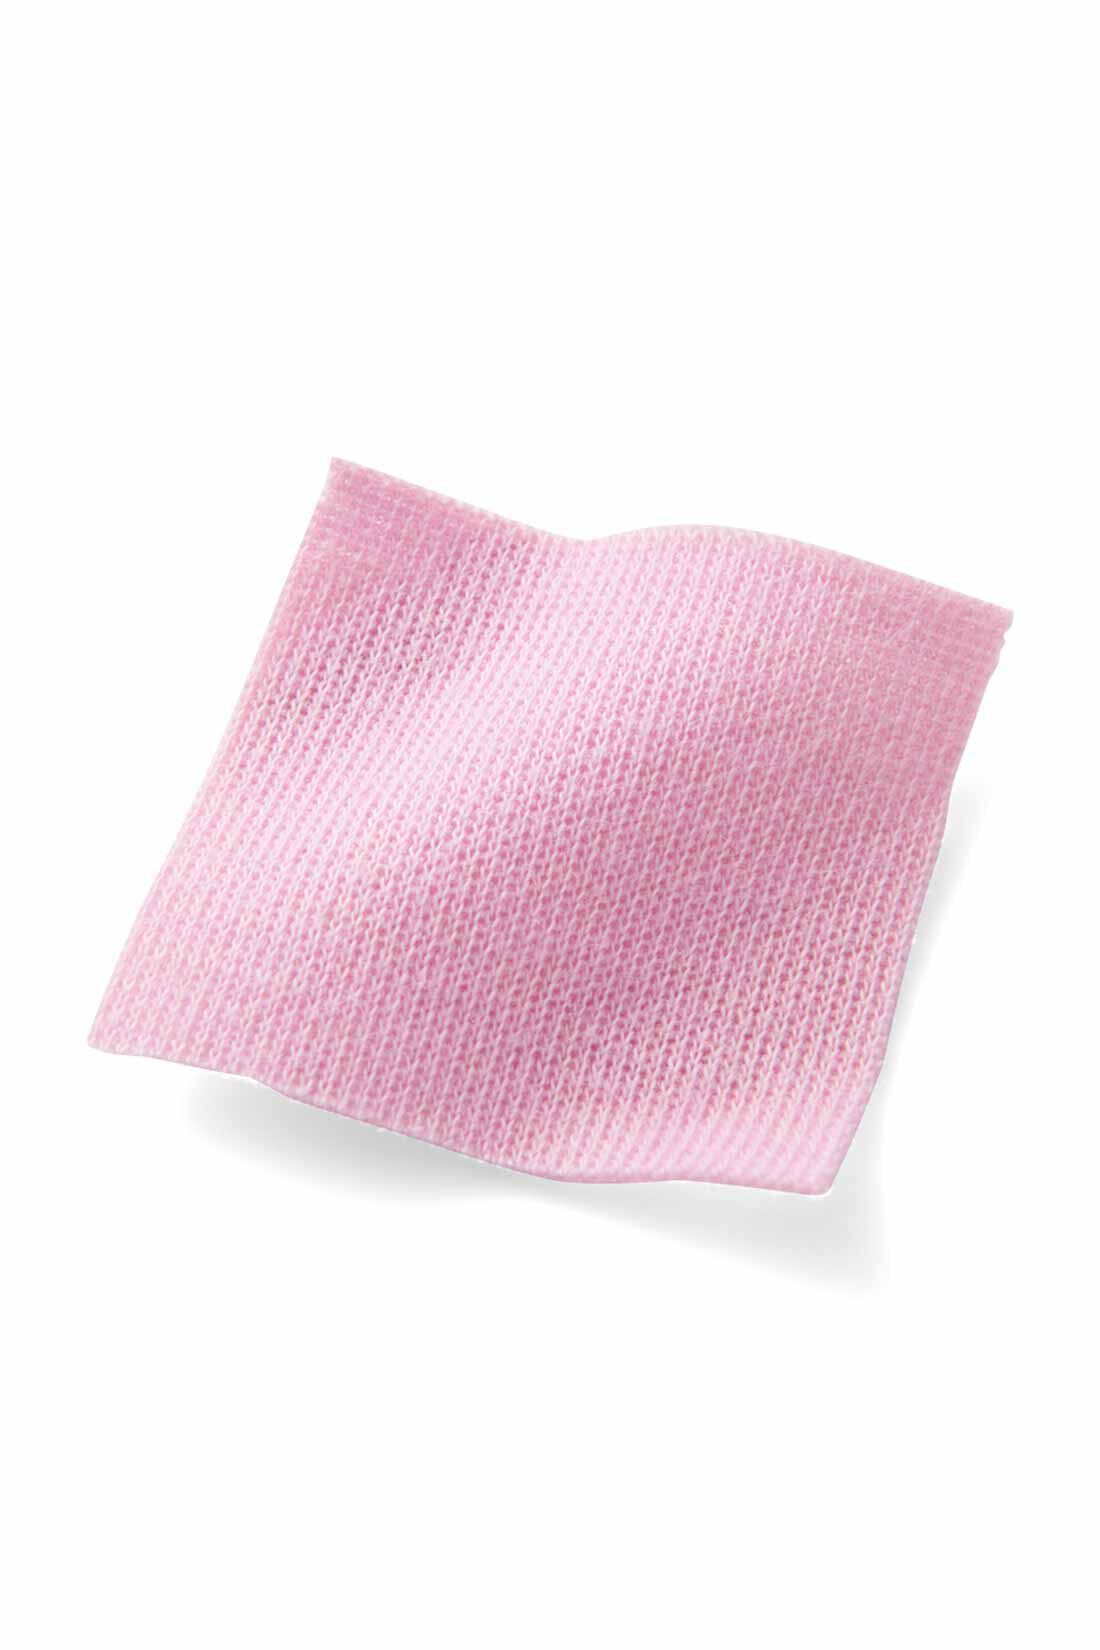 イディット|【イラストレーターきくちあつこさんコラボ】IEDIT[イディット]　フレアーマキシワンピース〈ピンク〉|通年着られる肉厚でやわらかなスムース素材。